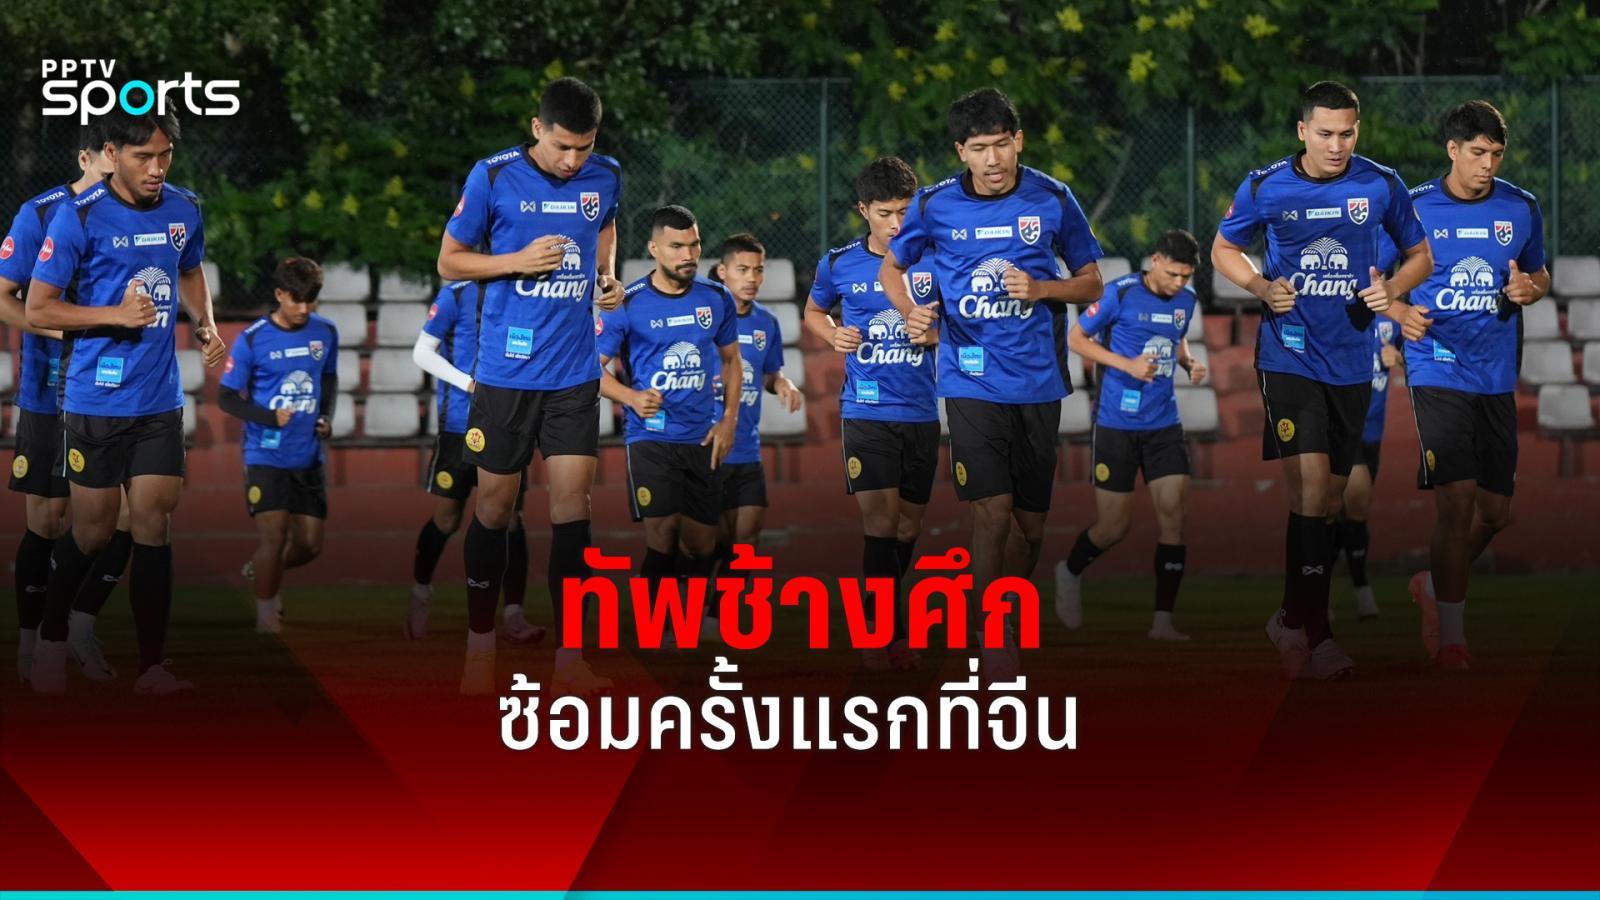 泰国国家队首次来华训练《Suphanan》透露球队要以自我为中心：PPTVHD36